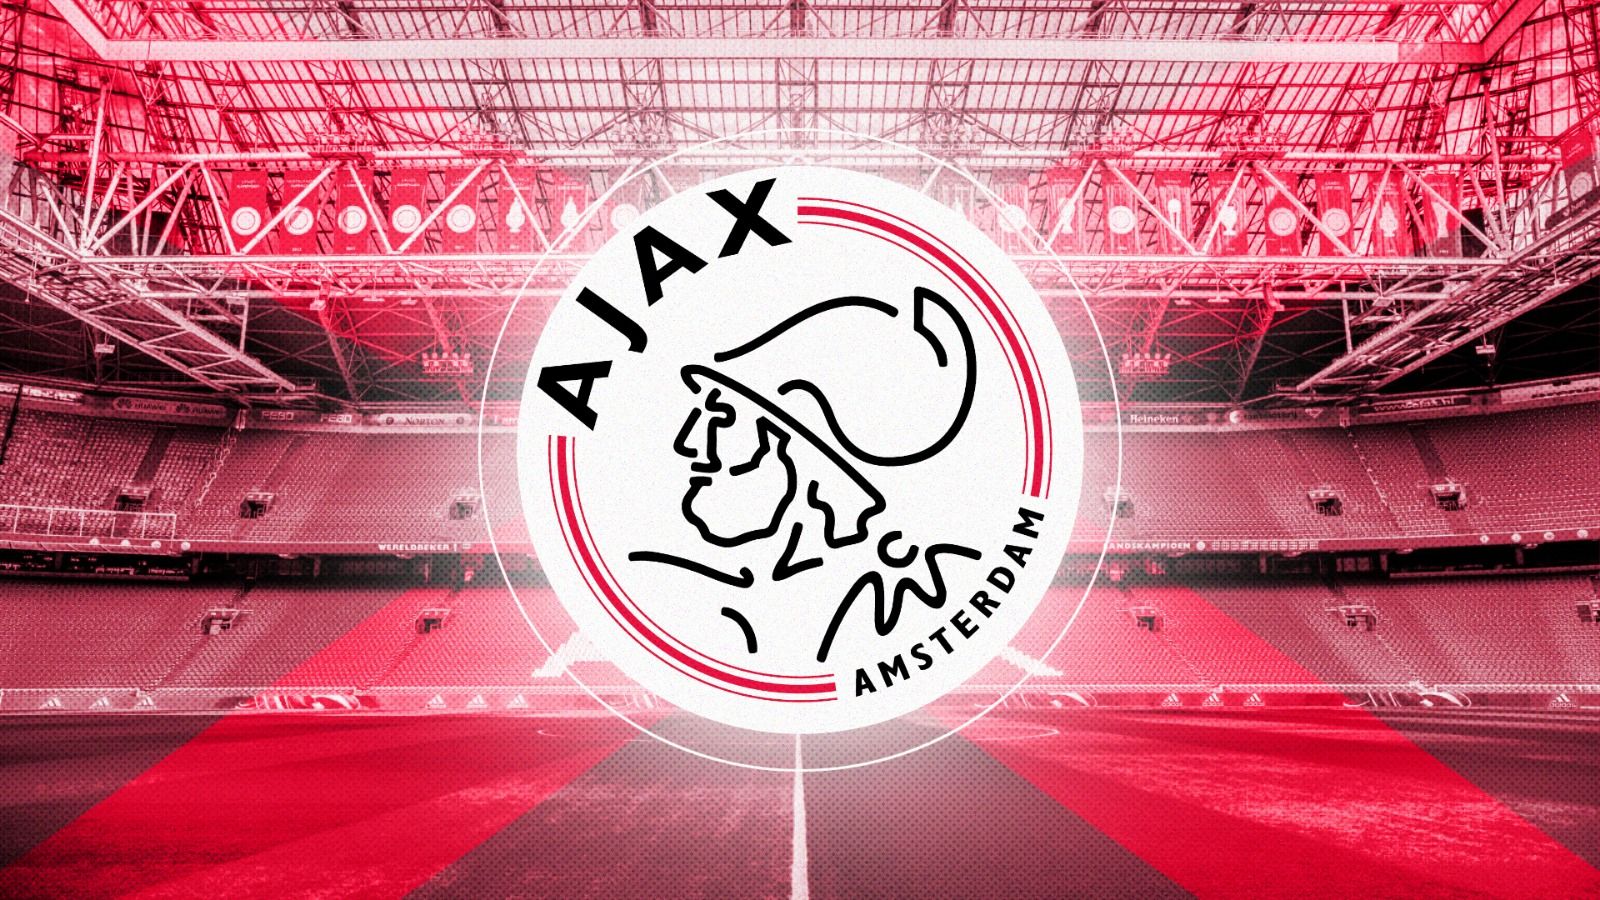 Laga Feyenoord vs Ajax Rusuh, Satu Pemain Dilempar Benda Hingga Cedera 